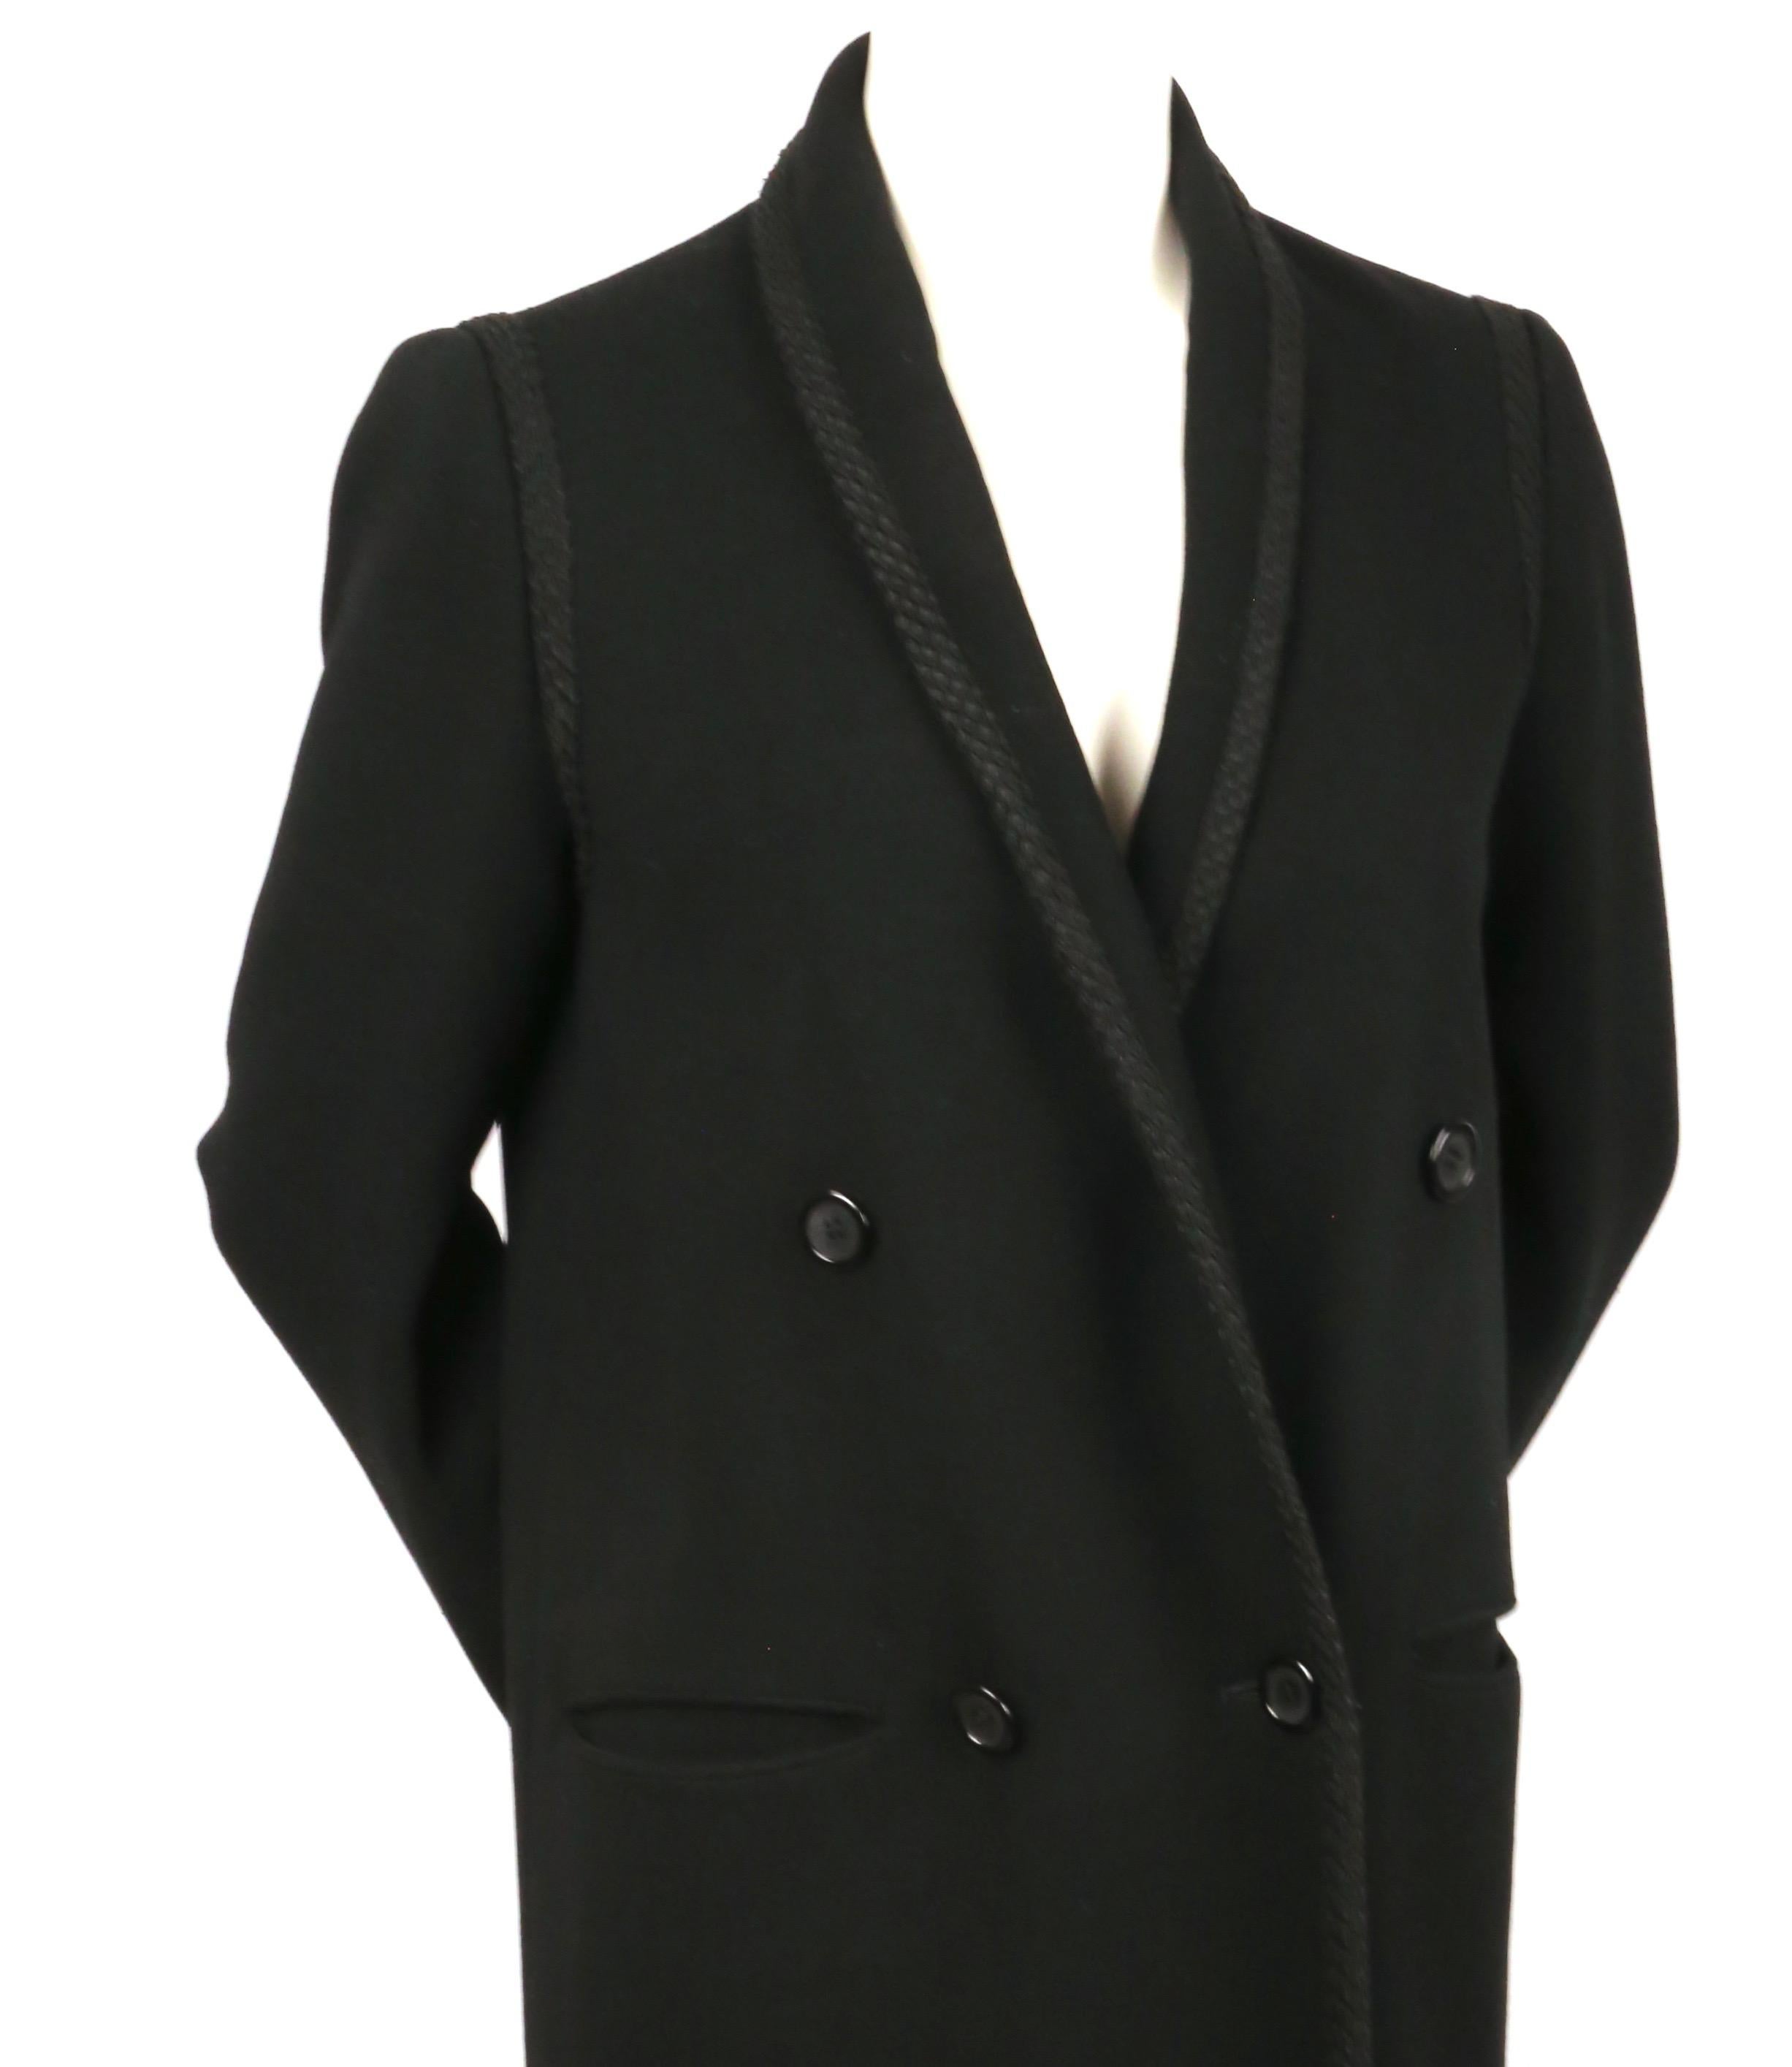 Manteau classique, structuré, en laine noire, avec col à double boutonnage et belle bordure décorative en cordon, conçu par Bill Blass, datant de la fin des années 1970, début des années 1980. Labellisé US 8, il est cependant petit, surtout au